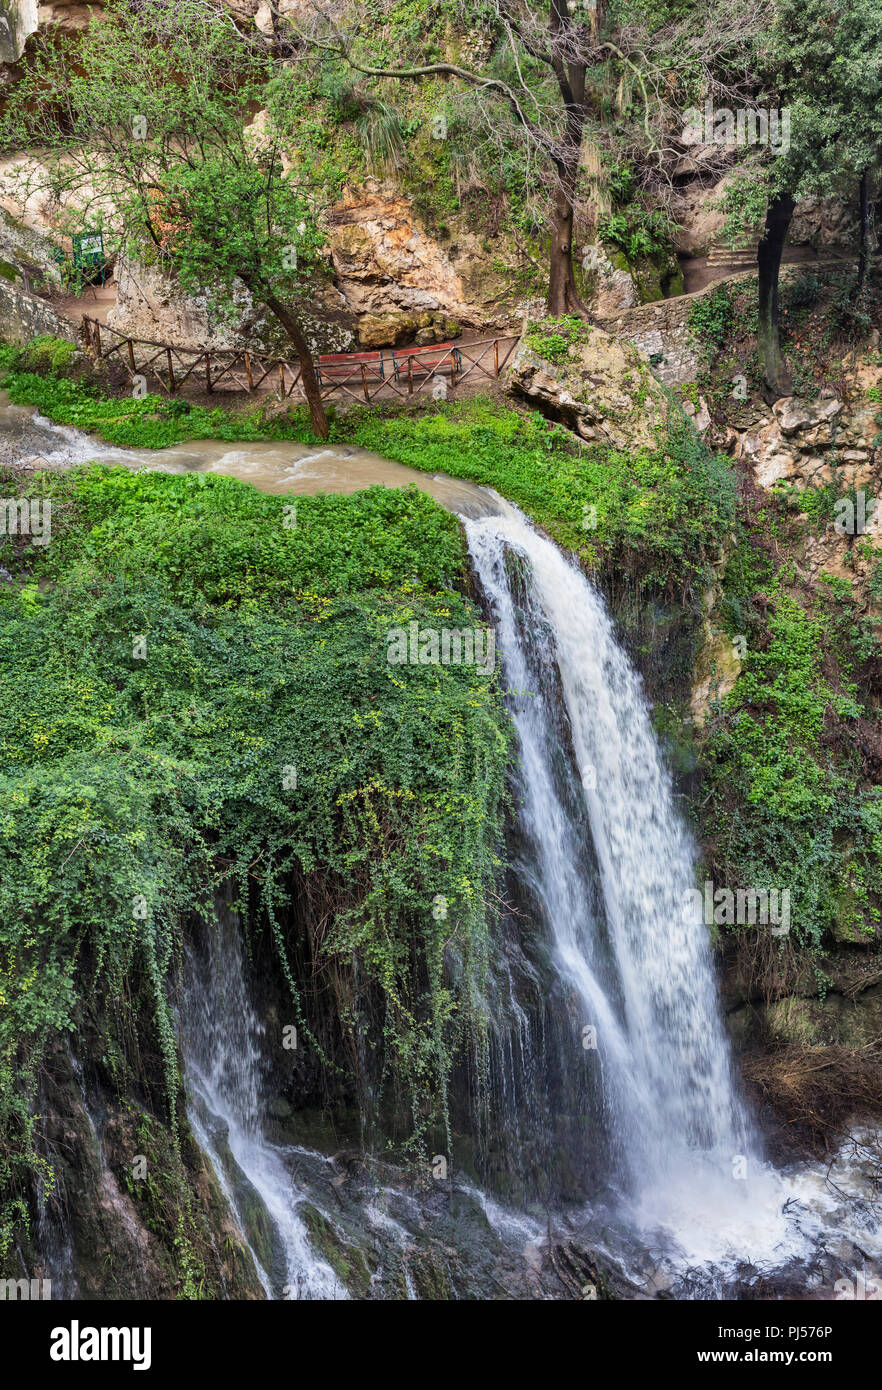 Valley of Hell's waterfalls, Park, Villa Gregoriana, Tivoli, Lazio, Italy Stock Photo